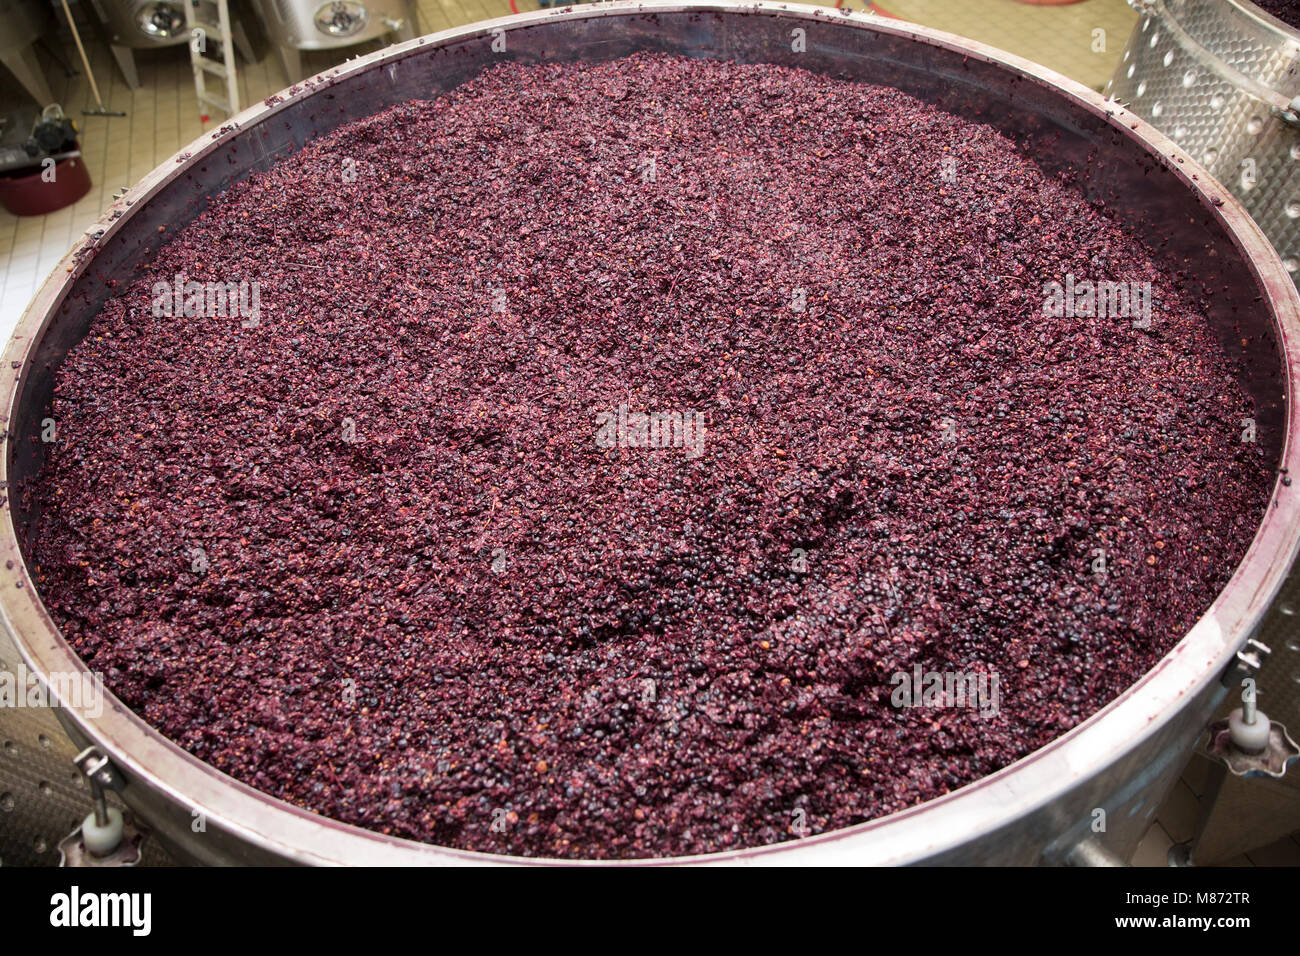 Les raisins rouges qui ont été broyées pour en faire du vin, Toscane, Italie Banque D'Images